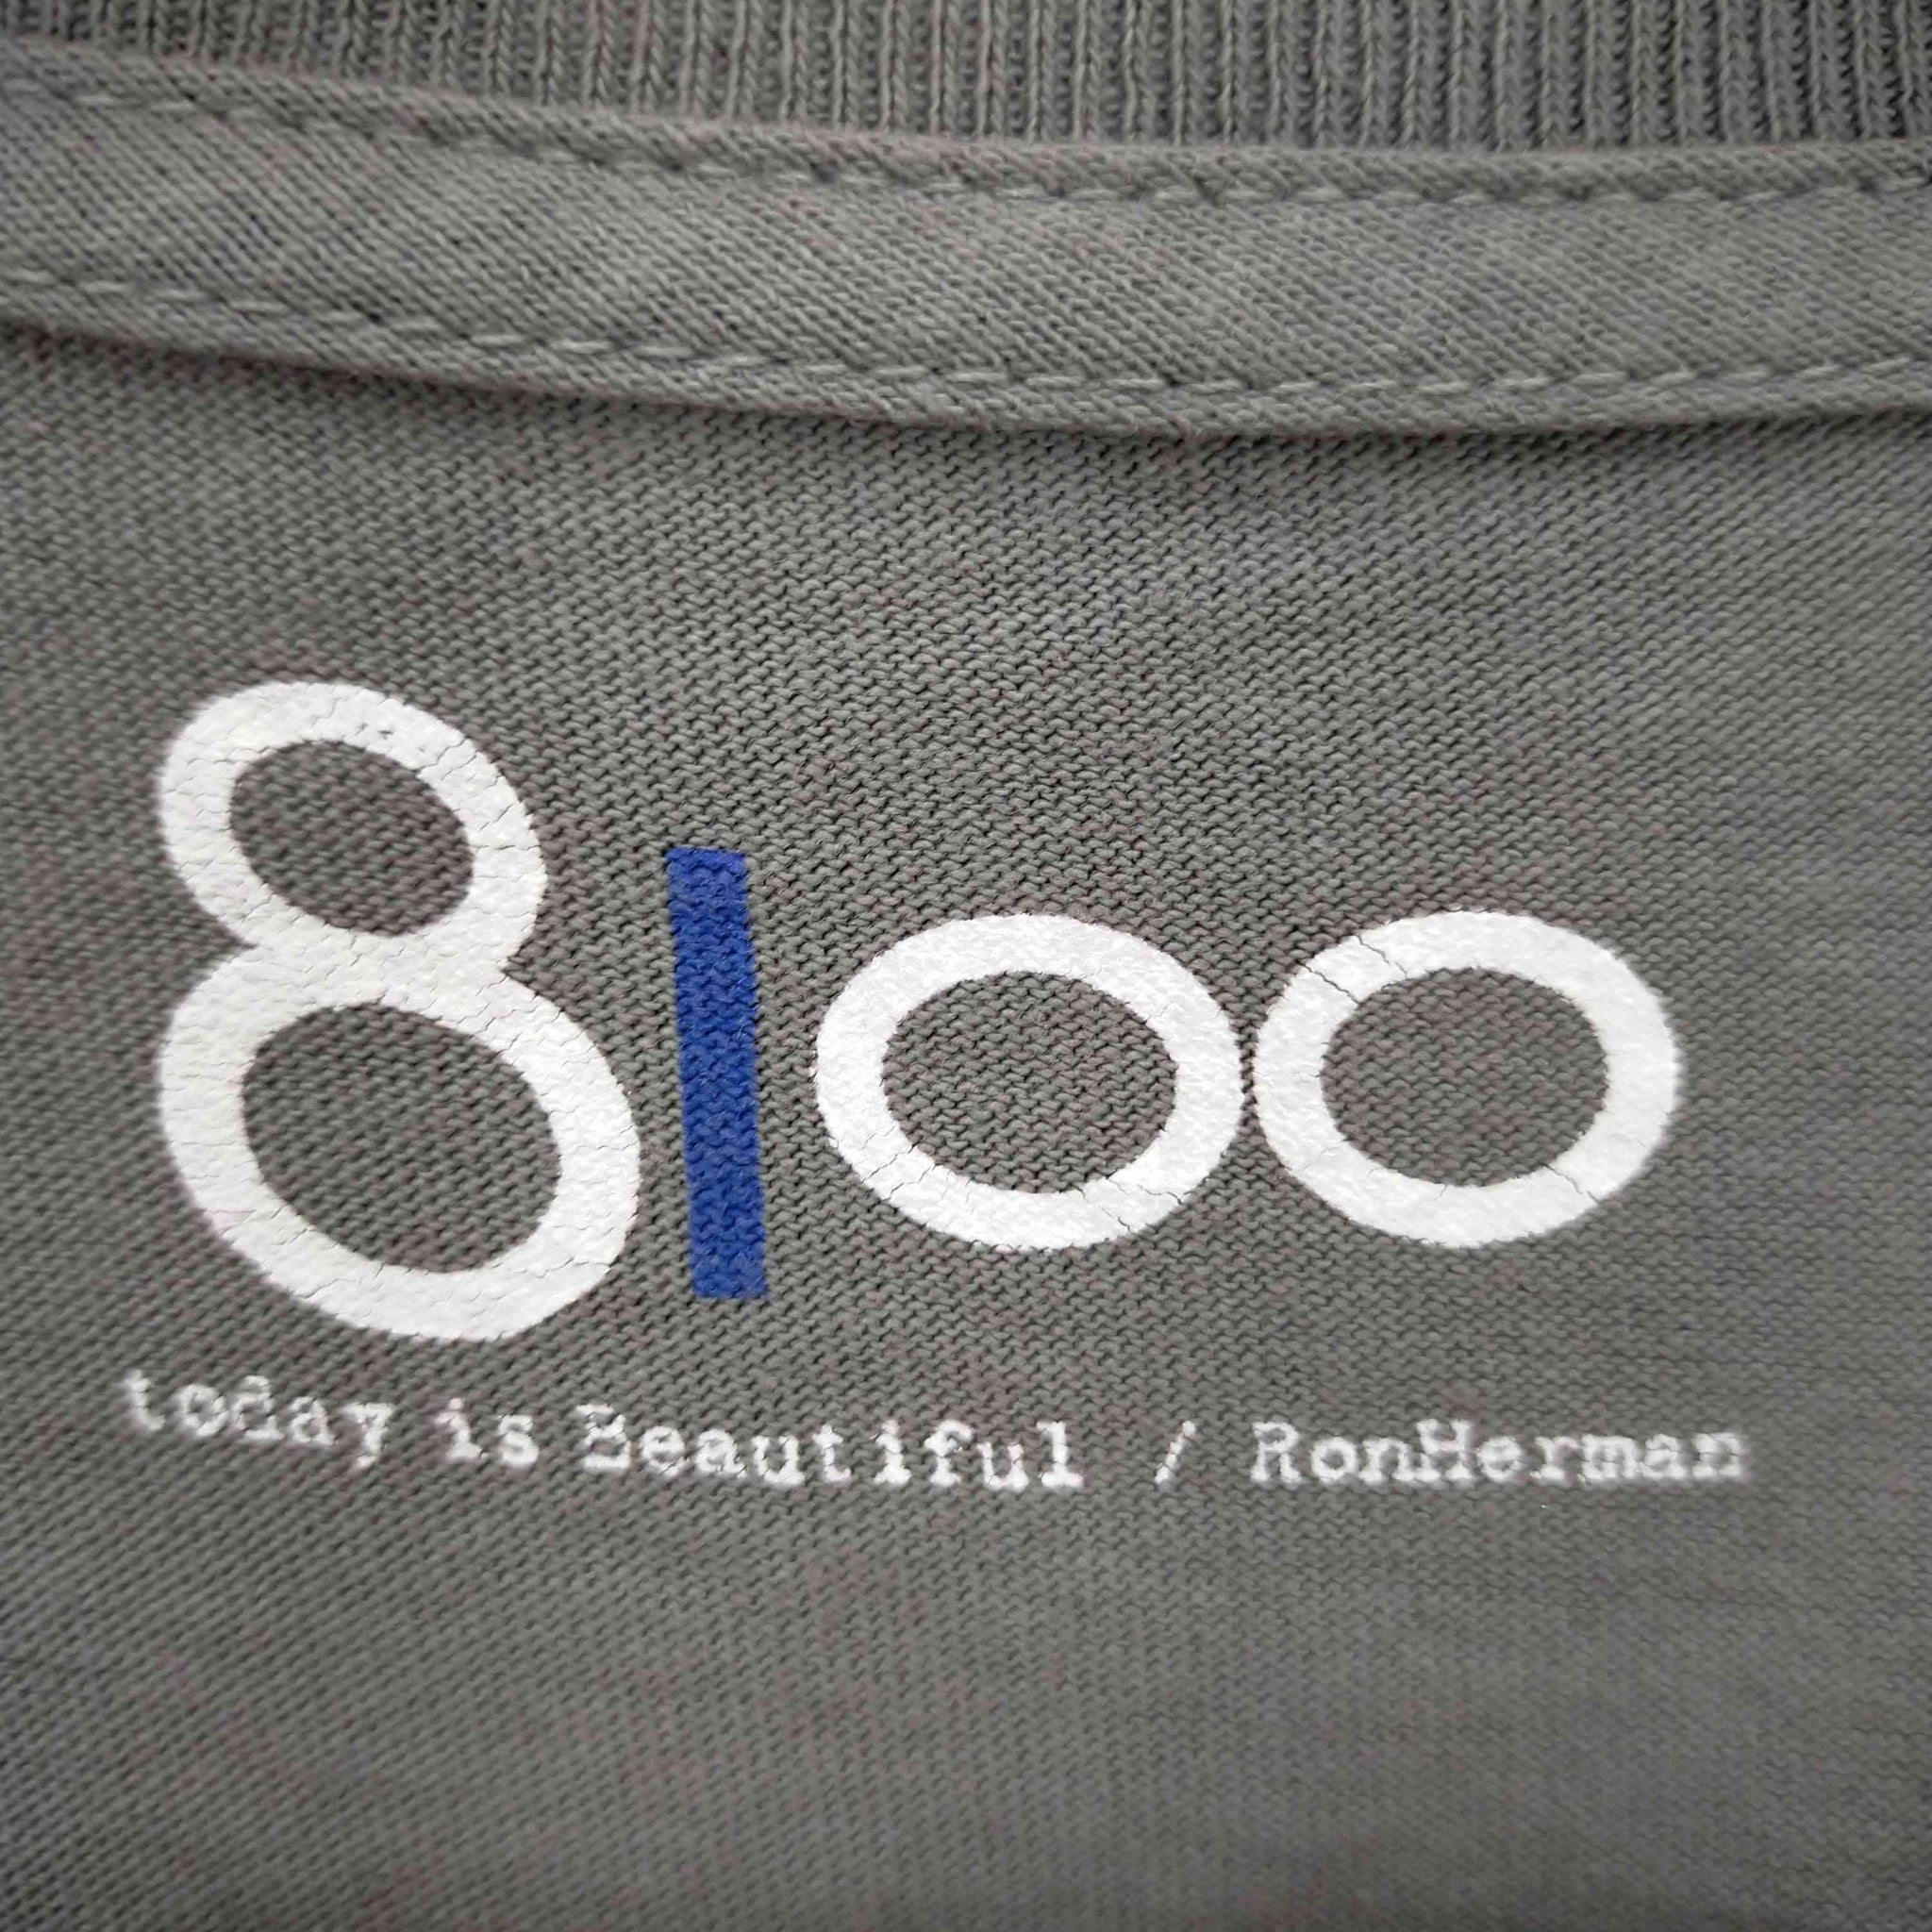 8100 Ron Herman(エイティーワンハンドレッドロンハーマン)コットンクルーネックTシャツ